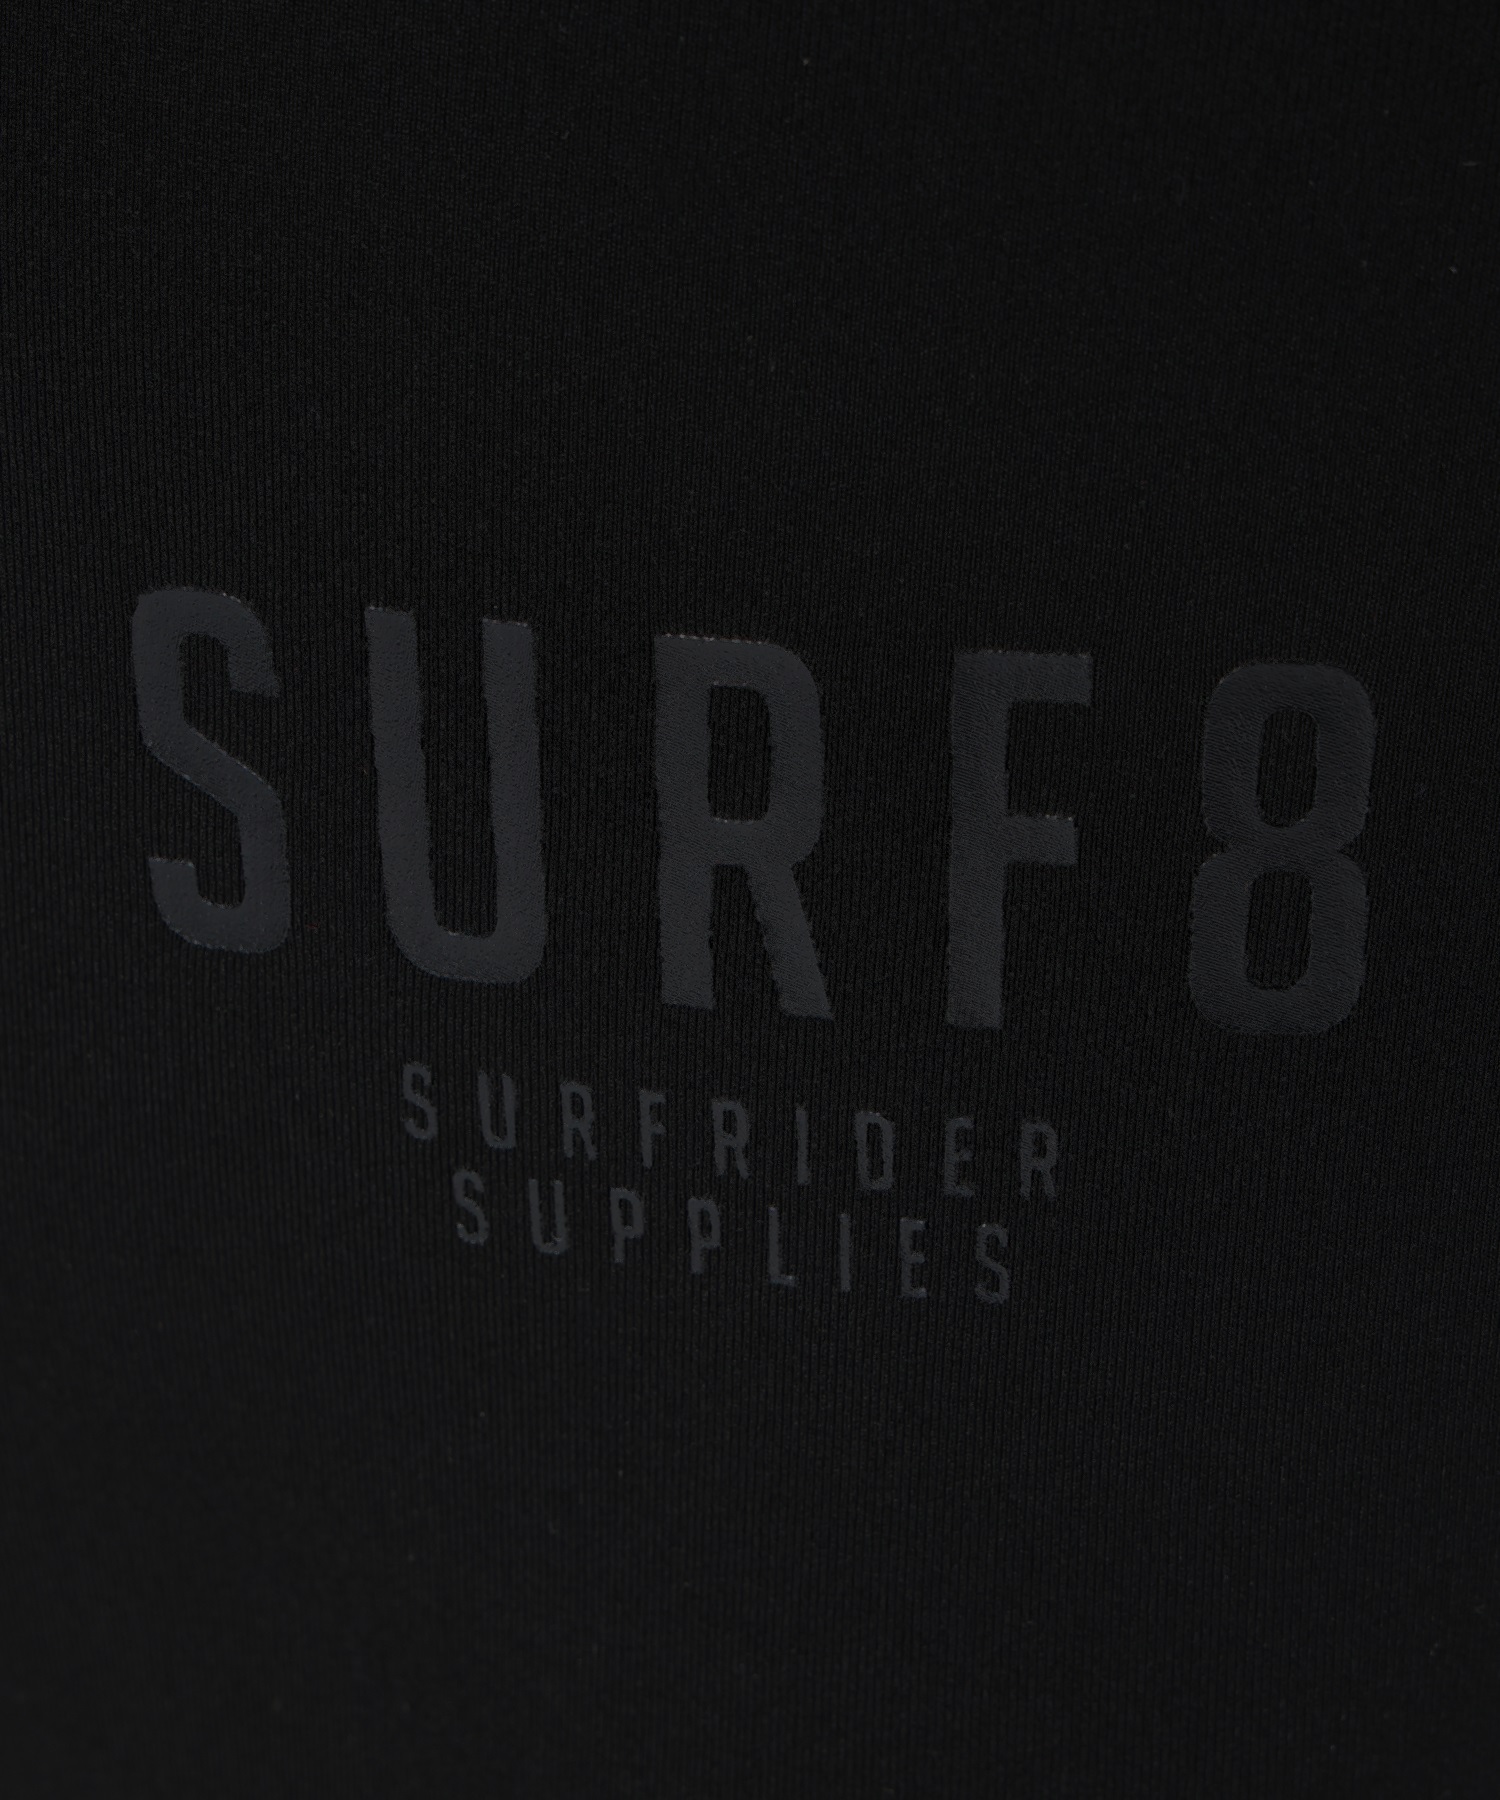 SURF8 サーフエイト ジャージフード起毛 2mm 83F3G6 サーフィンヘッドウェア(BLK-2XS)